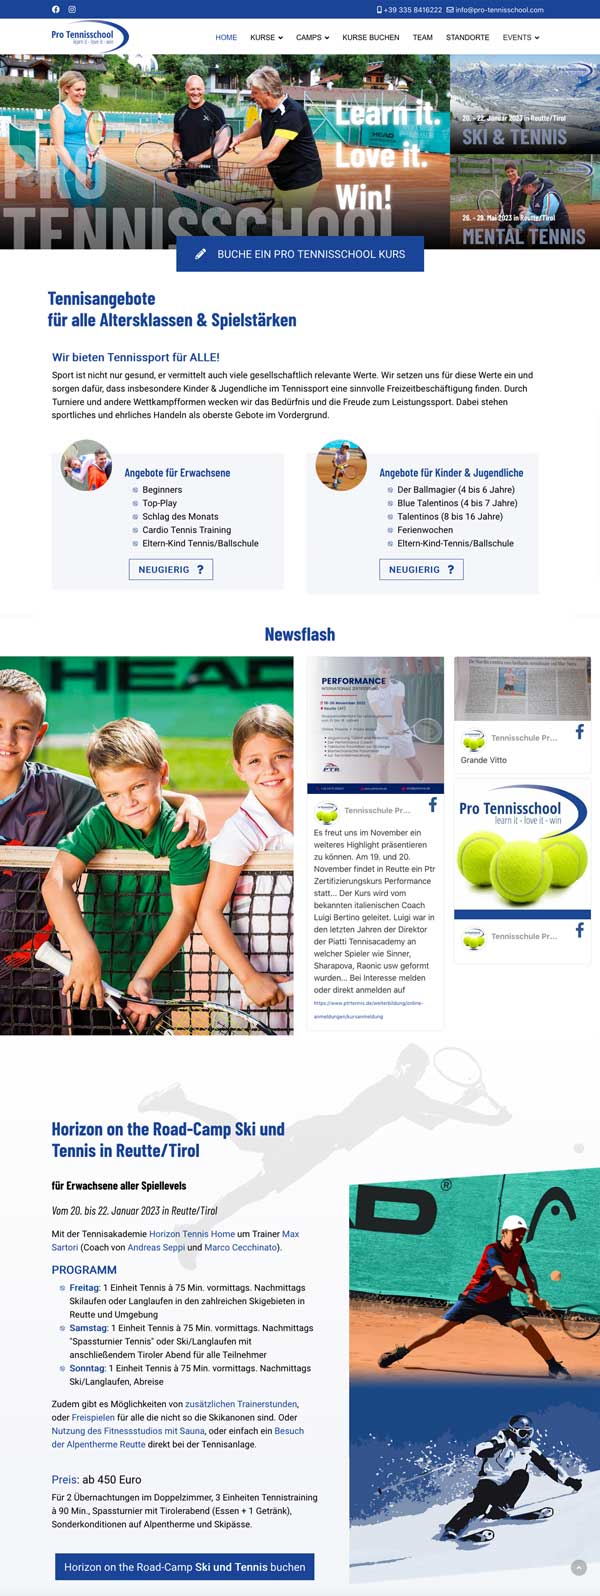 www.pro-tennisschool.com